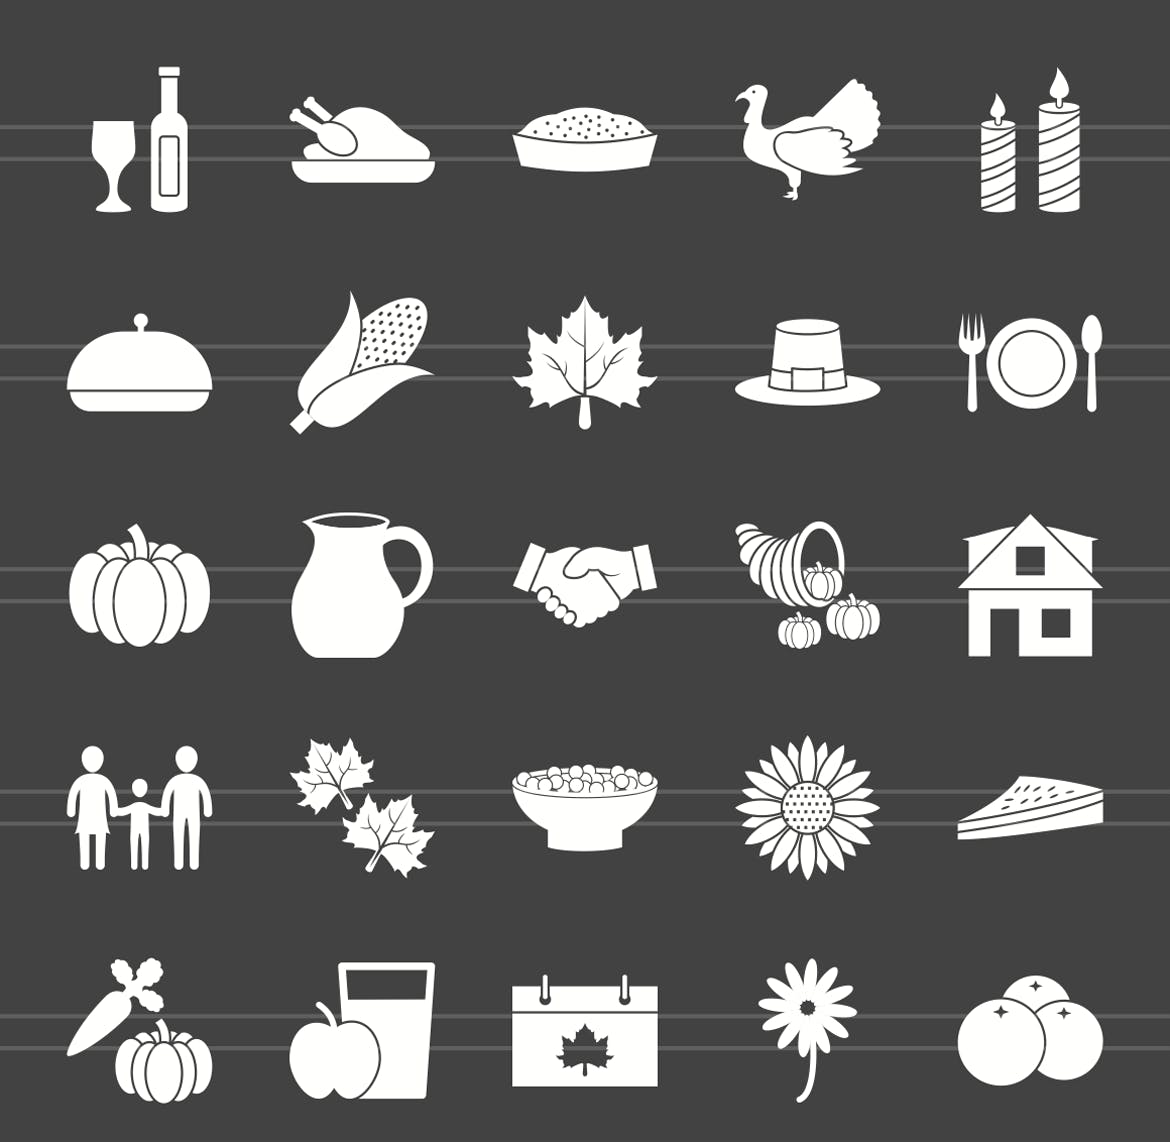 50枚感恩节主题反转色矢量字体第一素材精选图标 50 Thanksgiving Glyph Inverted Icons插图(1)